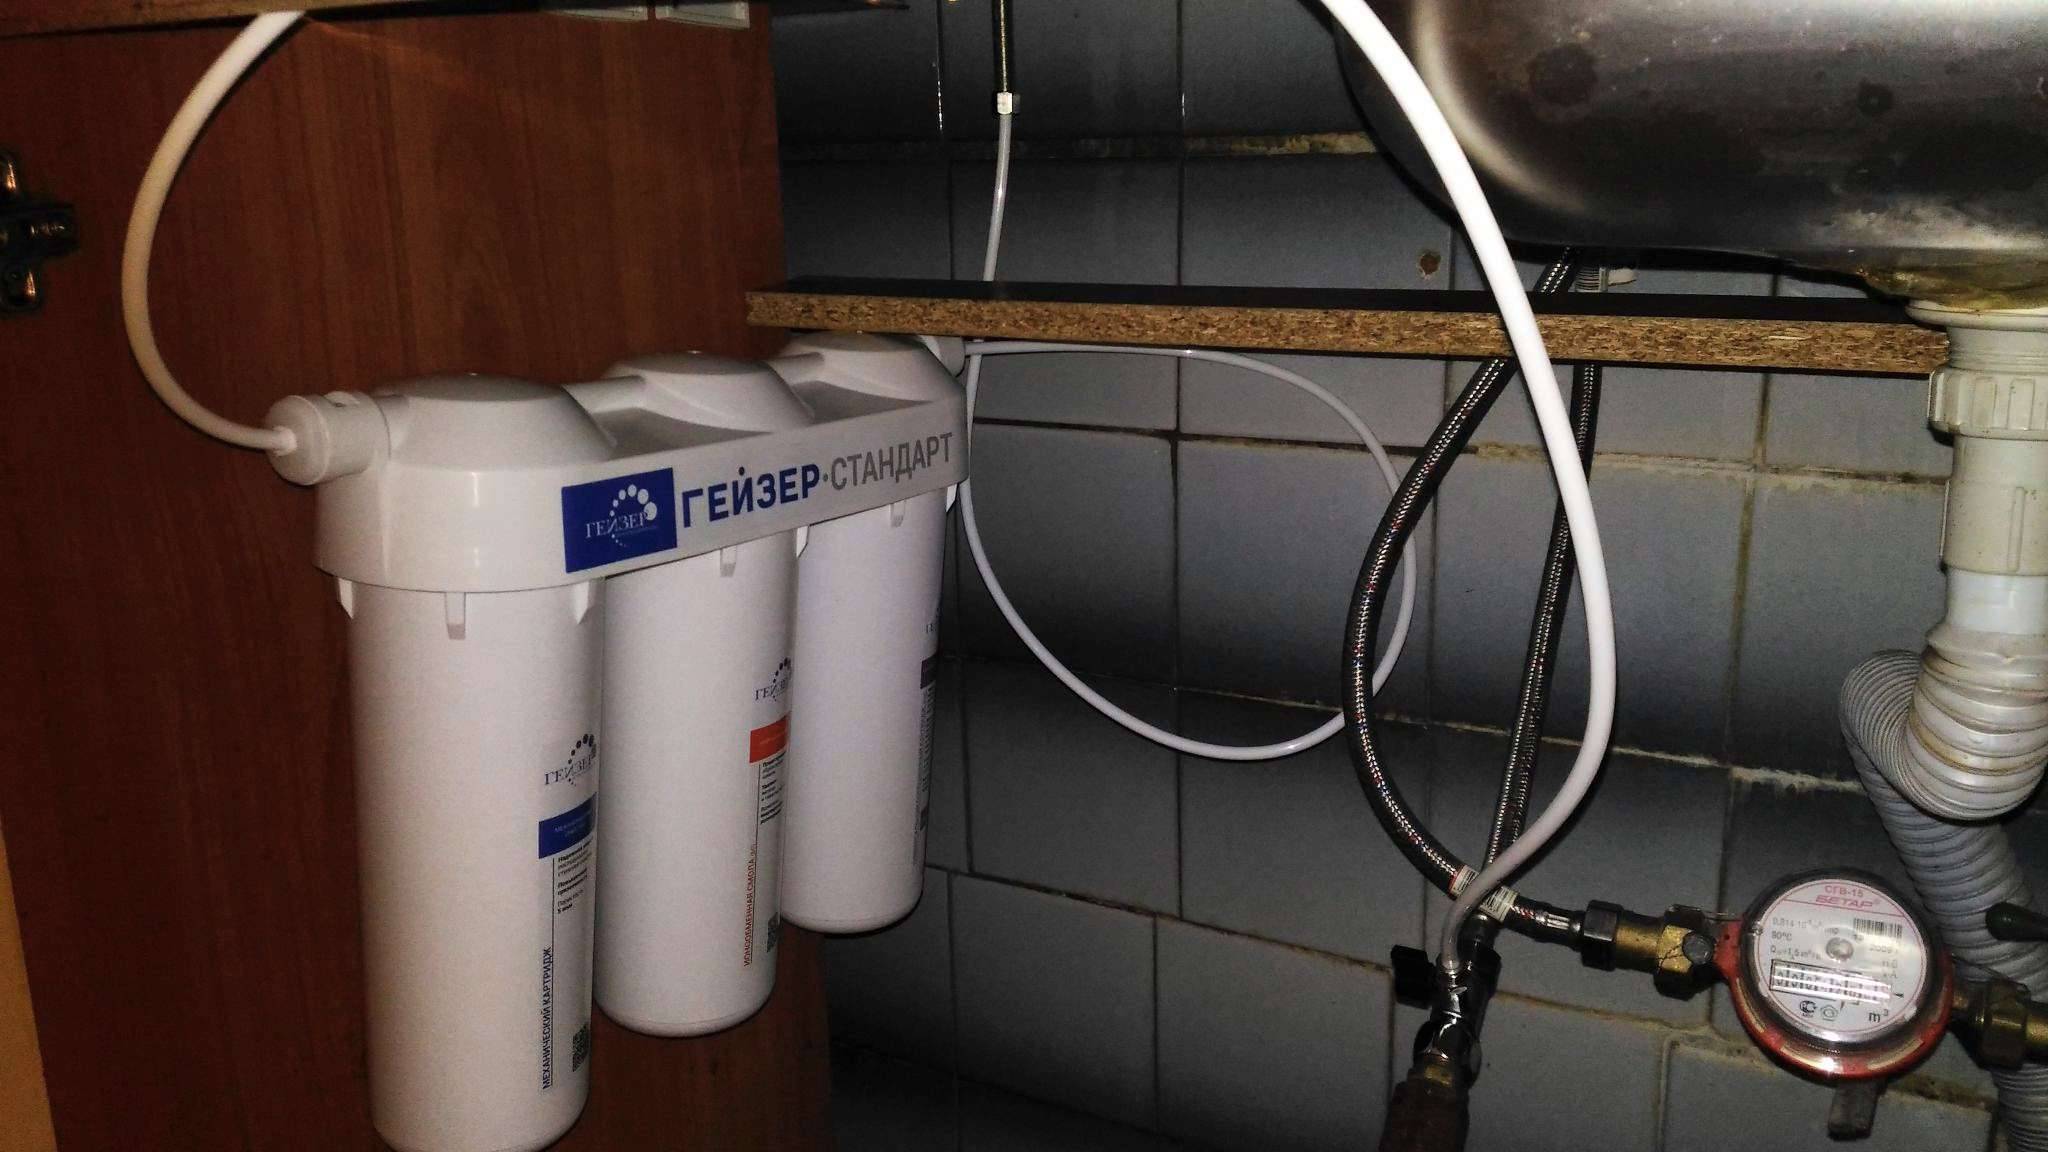 Установка фильтров для очистки воды в квартире — правила монтажа и выбора систем очистки